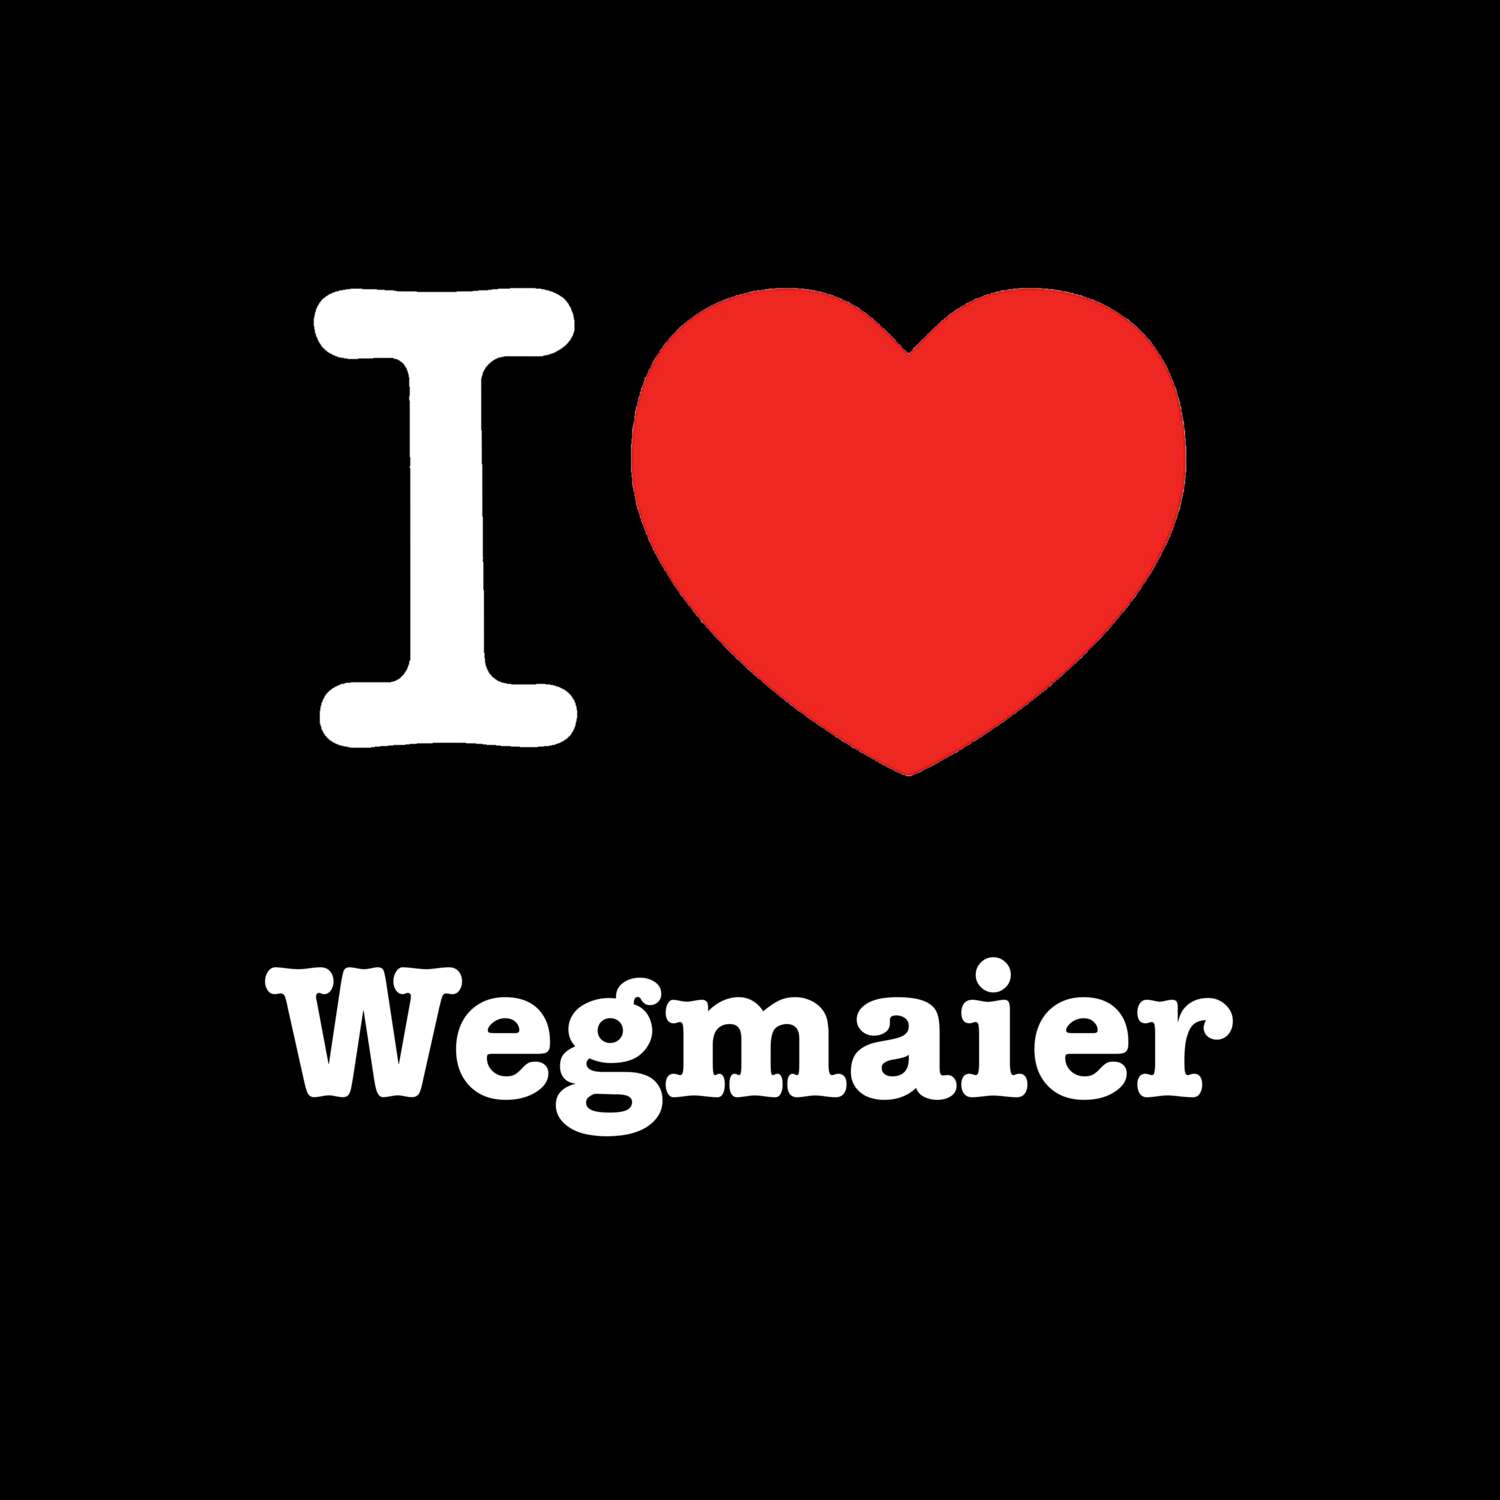 Wegmaier T-Shirt »I love«